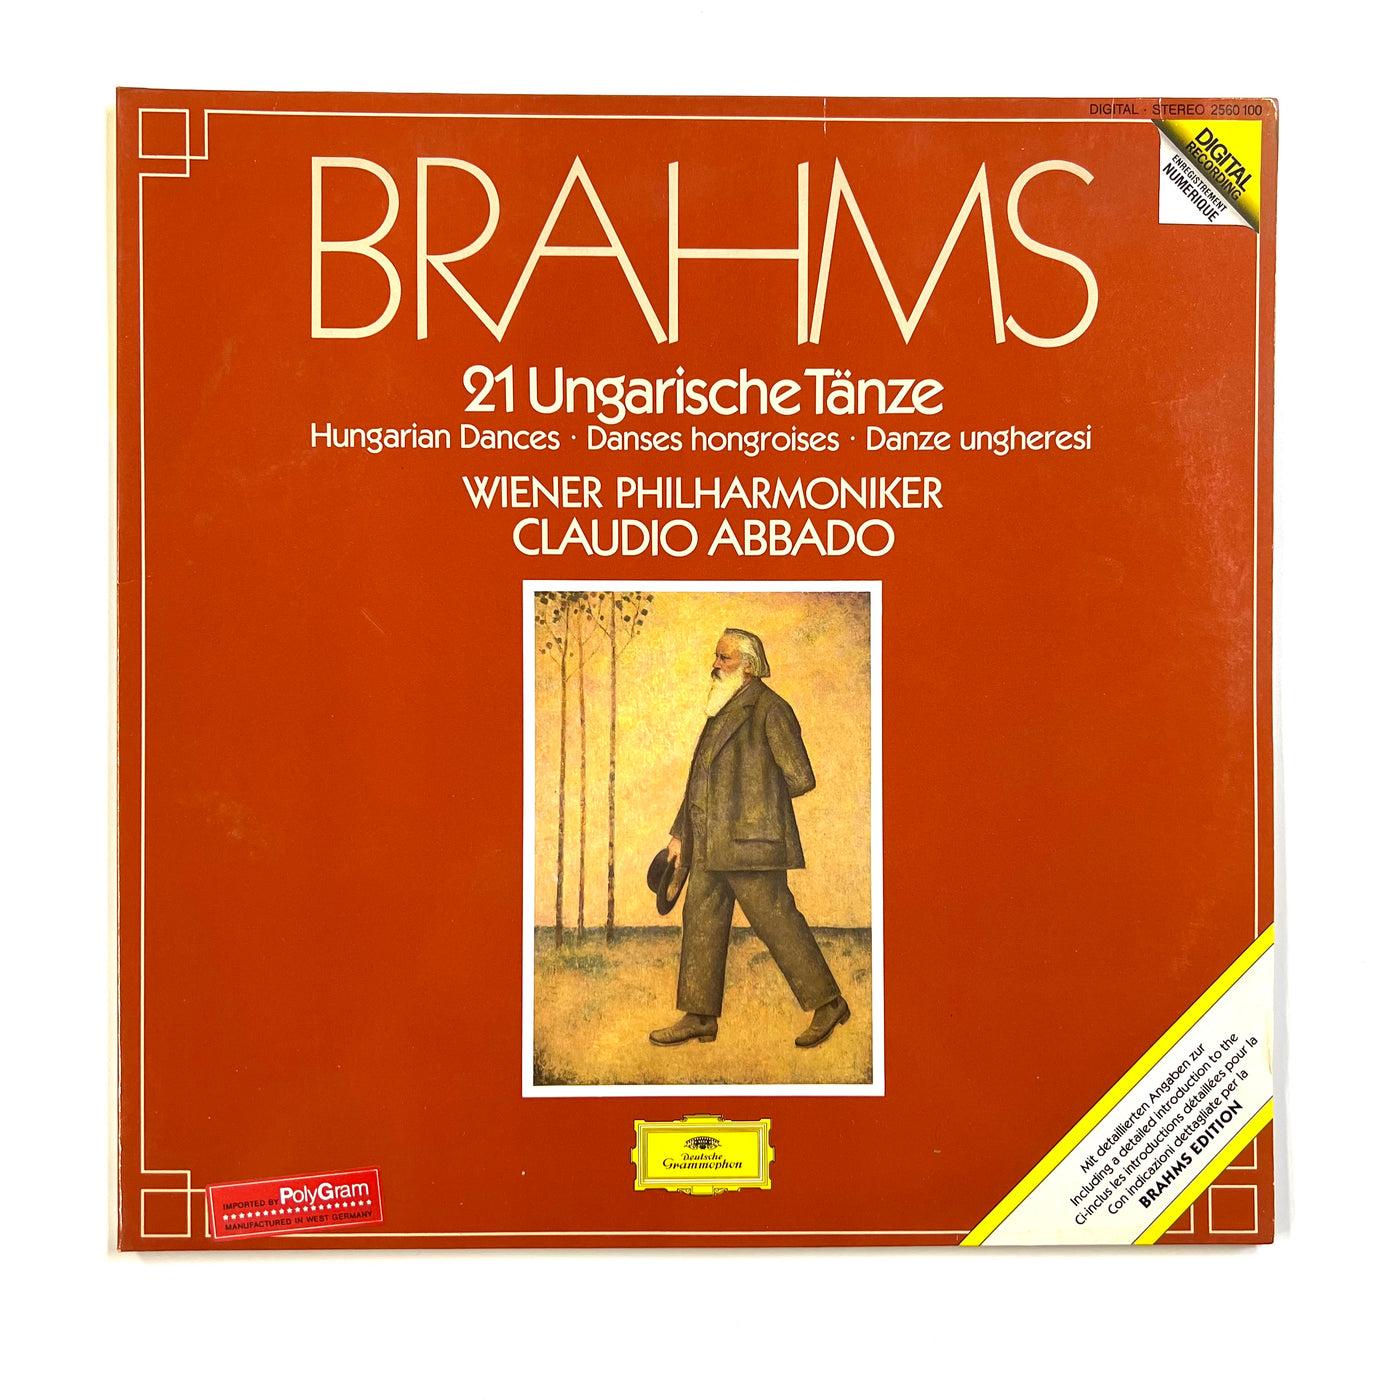 Johannes Brahms - Wiener Philharmoniker, Claudio Abbado - 21 Ungarische Tänze